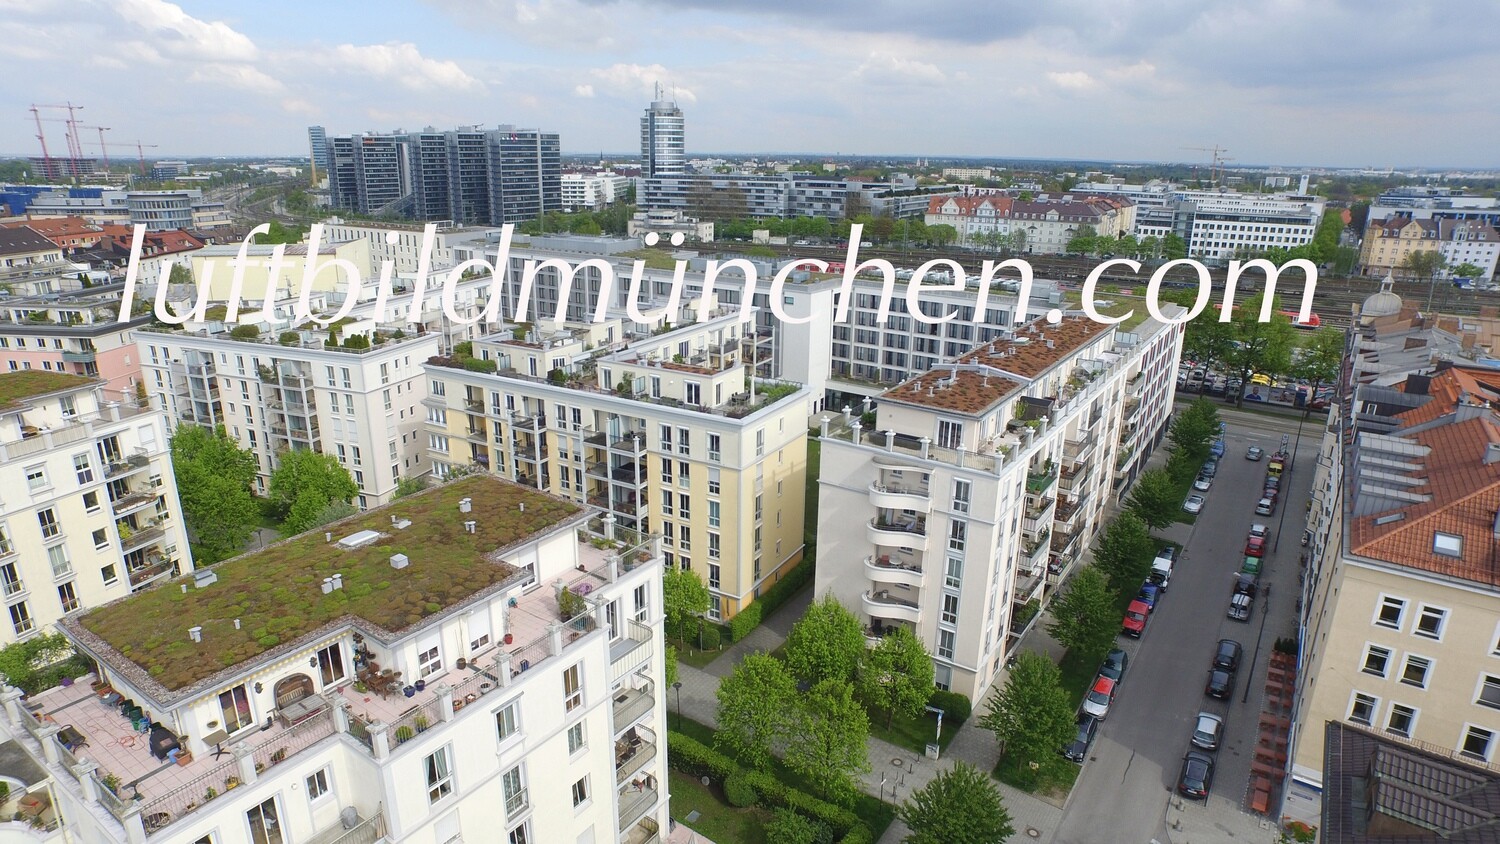 Luftbildfoto, Luftaufnahme, Luftbild, Foto mit Drohne, München, Foto von oben, Wohngebiet, Haidhausen, Ostbahnhof,